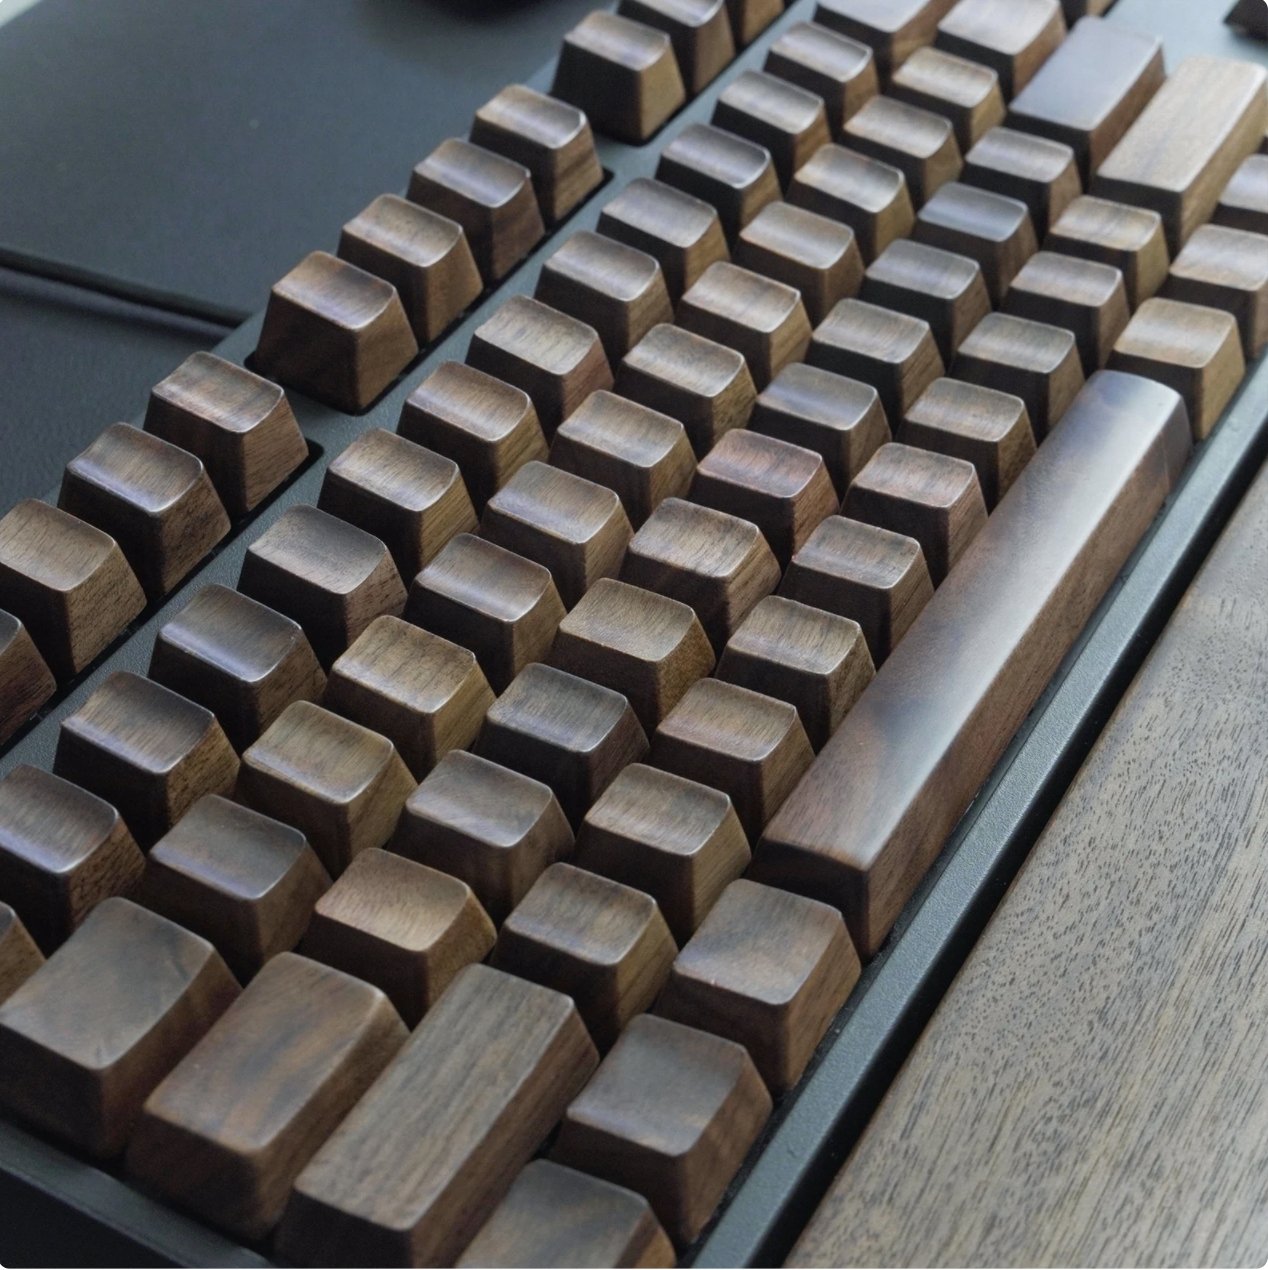 walnut-wood-full-keycap-set-detail